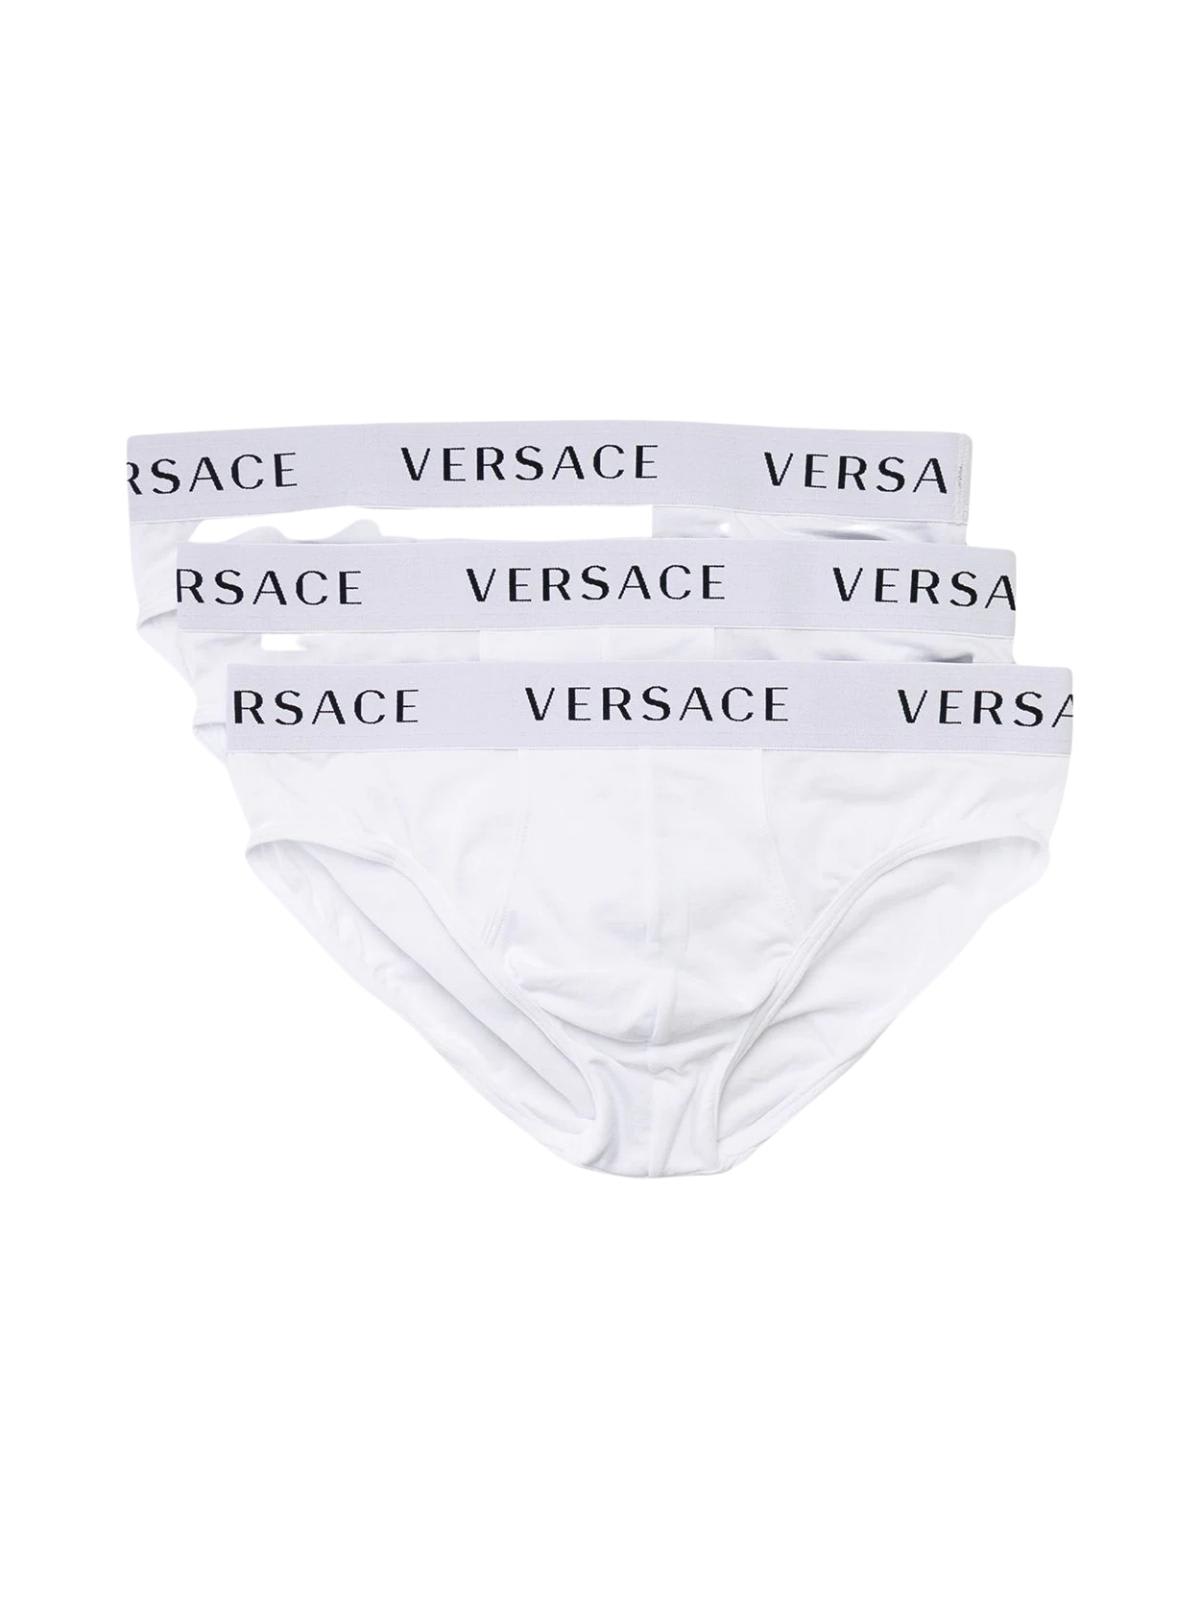 Versace Brief Tri Pack Underwear